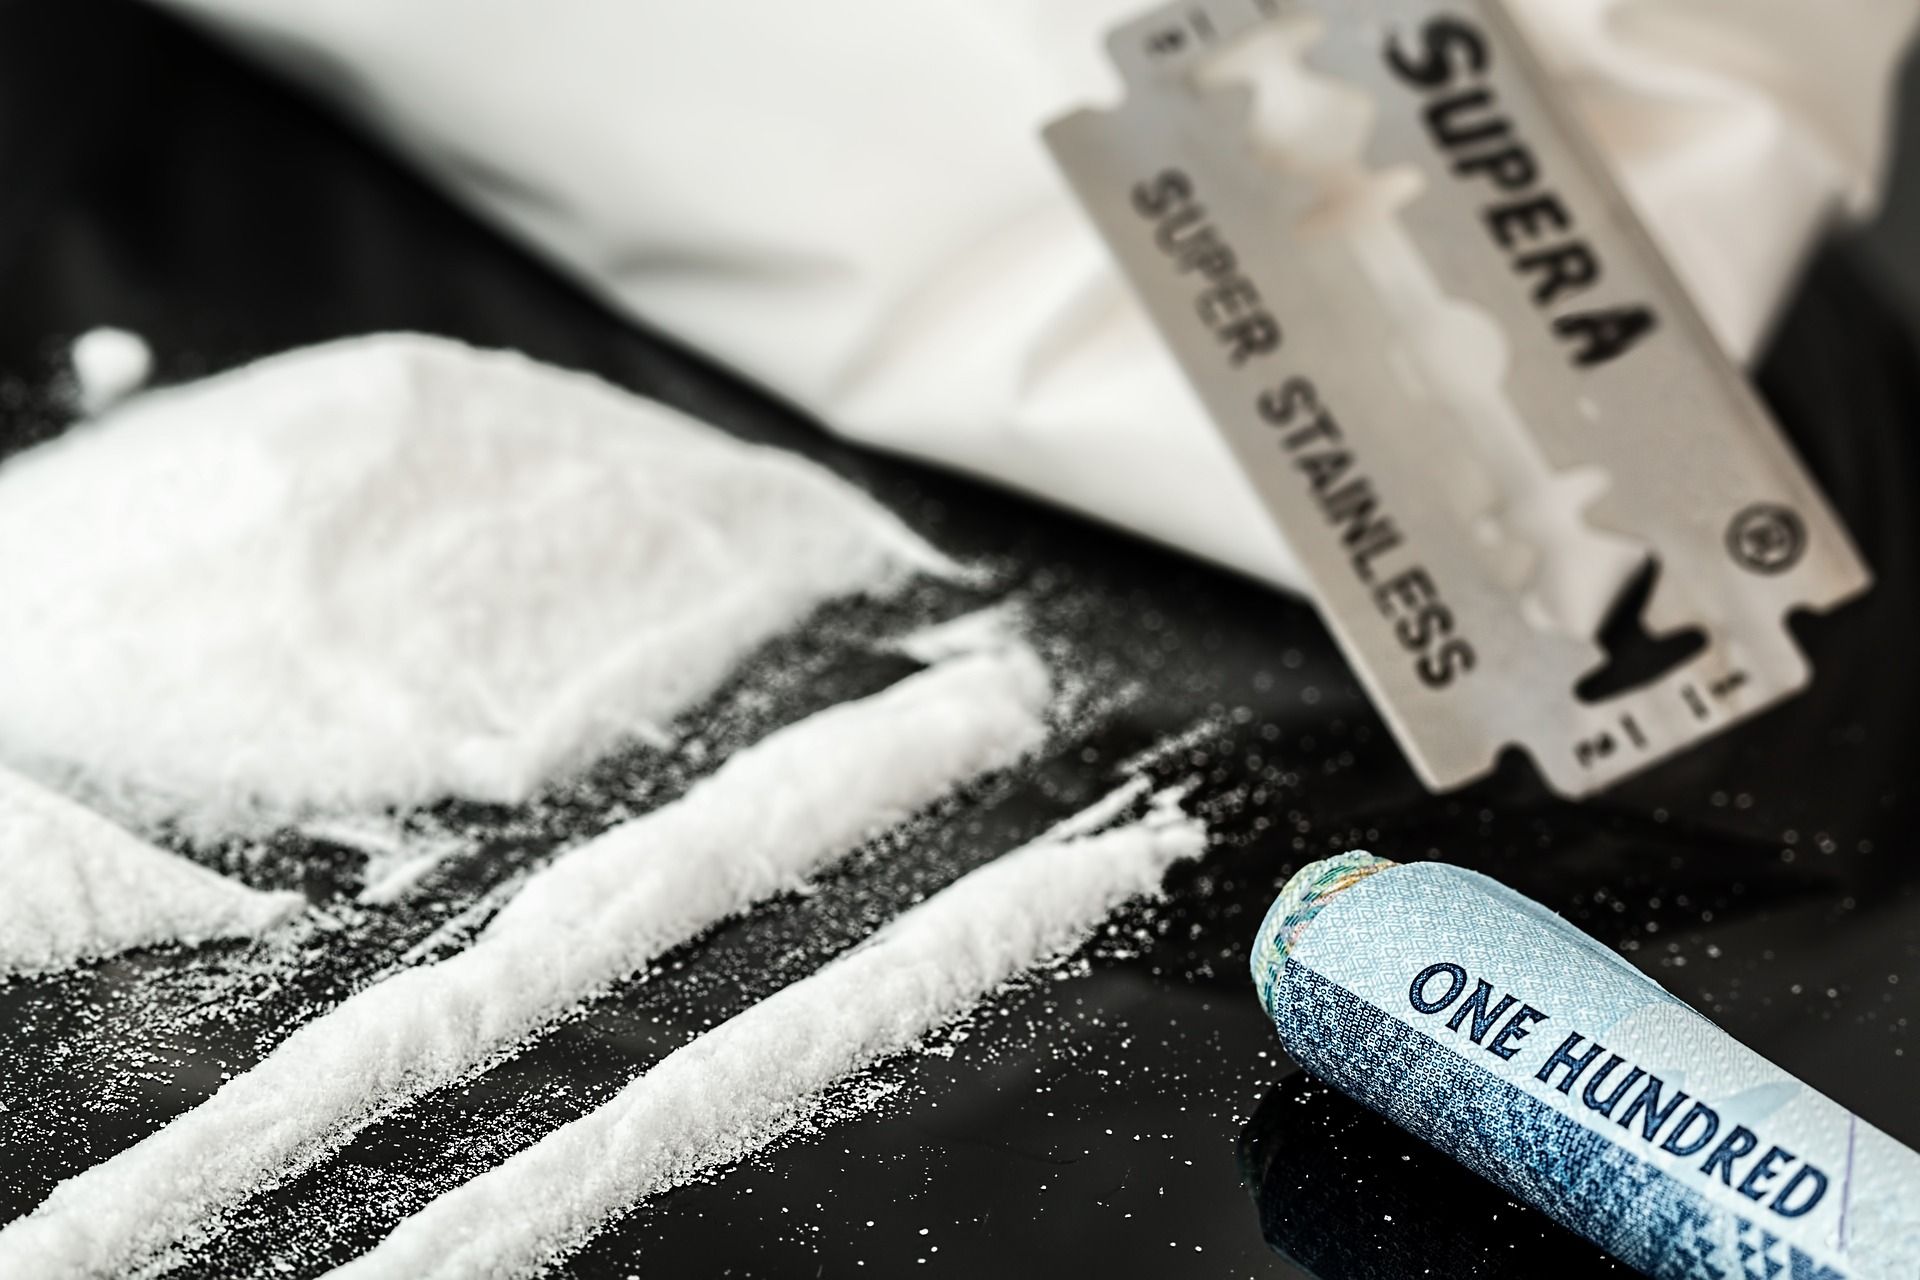 La alcaldesa de Ámsterdam, a favor de legalizar la cocaína para combatir el narcotráfico